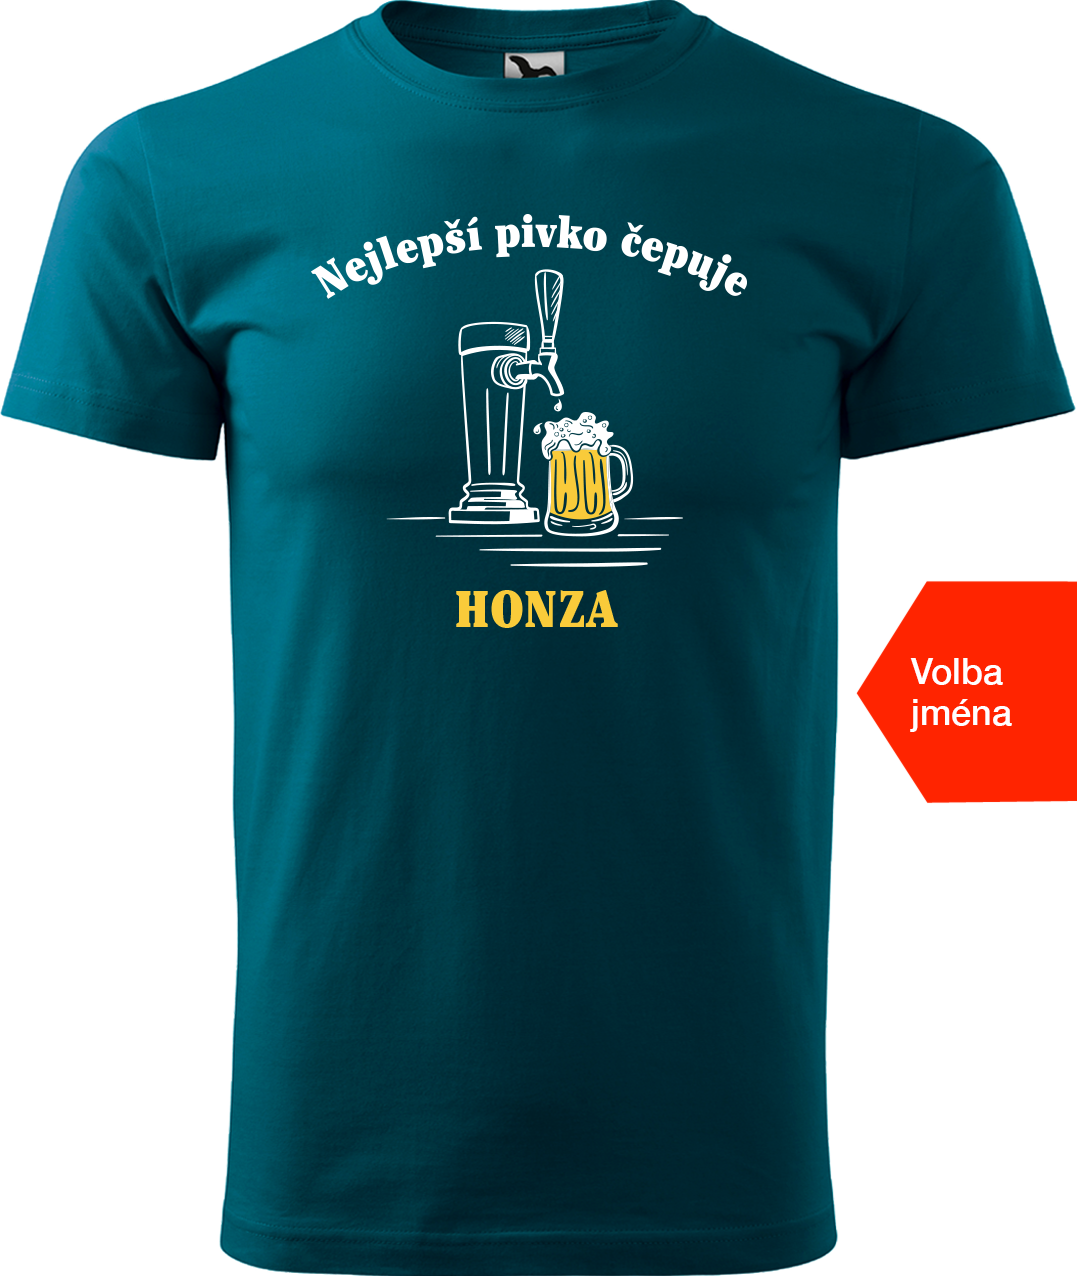 Pivní tričko - Nejlepší pivko čepuje + jméno Velikost: 3XL, Barva: Petrolejová (93)